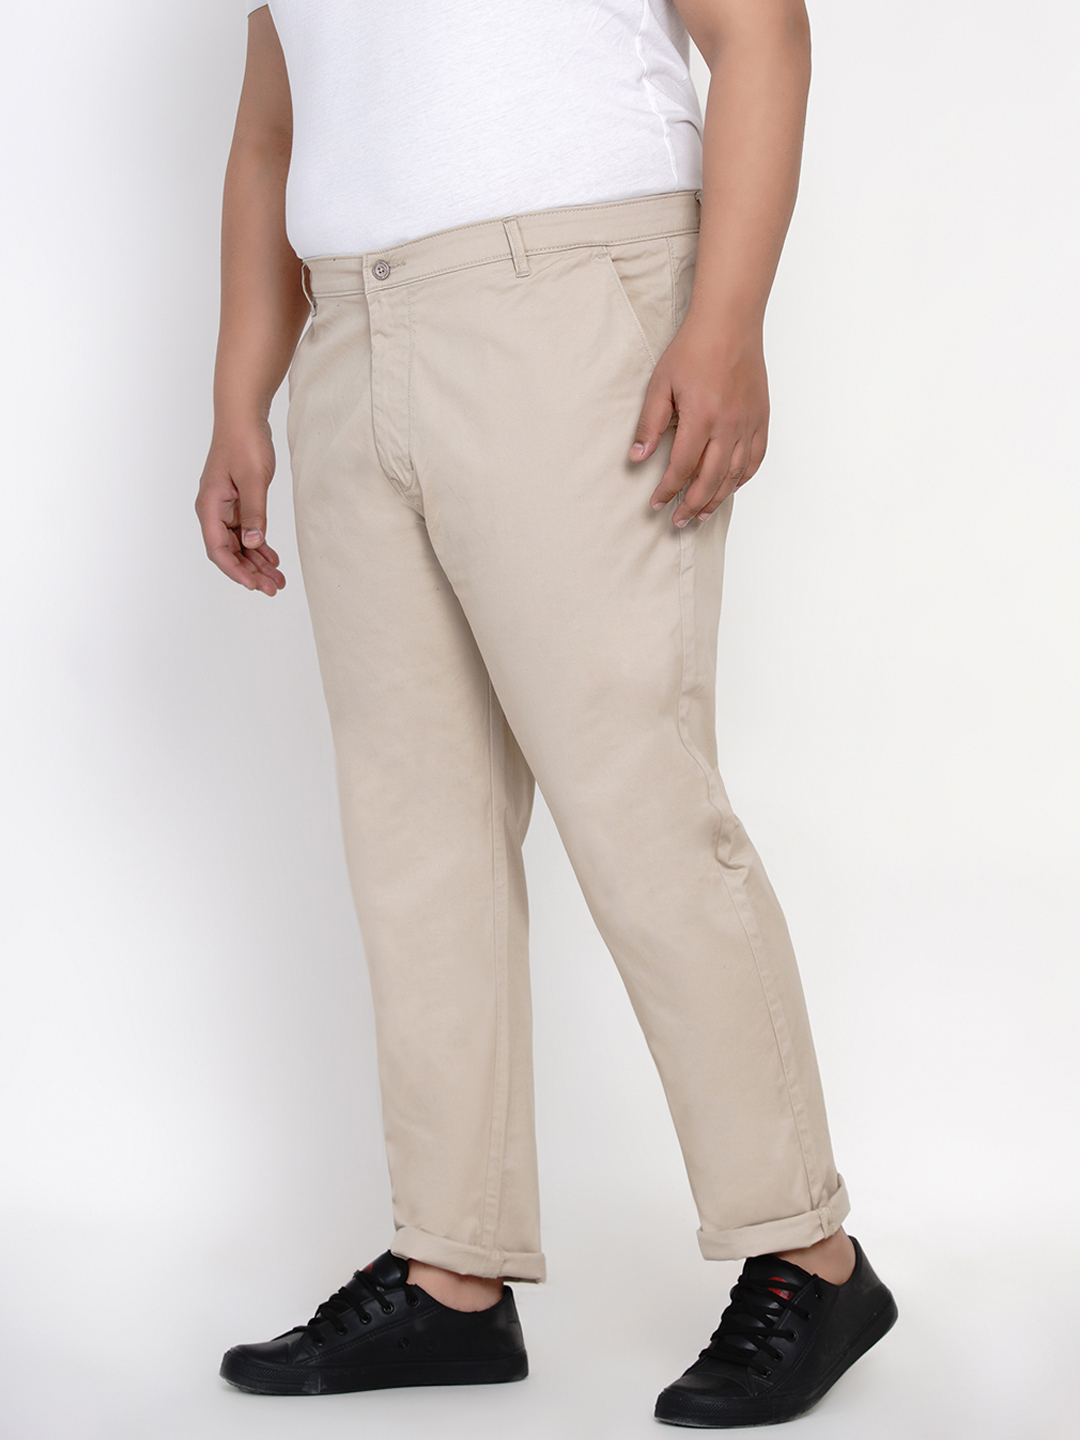 bottomwear/trousers/JPTR2161C/jptr2161c-4.jpg